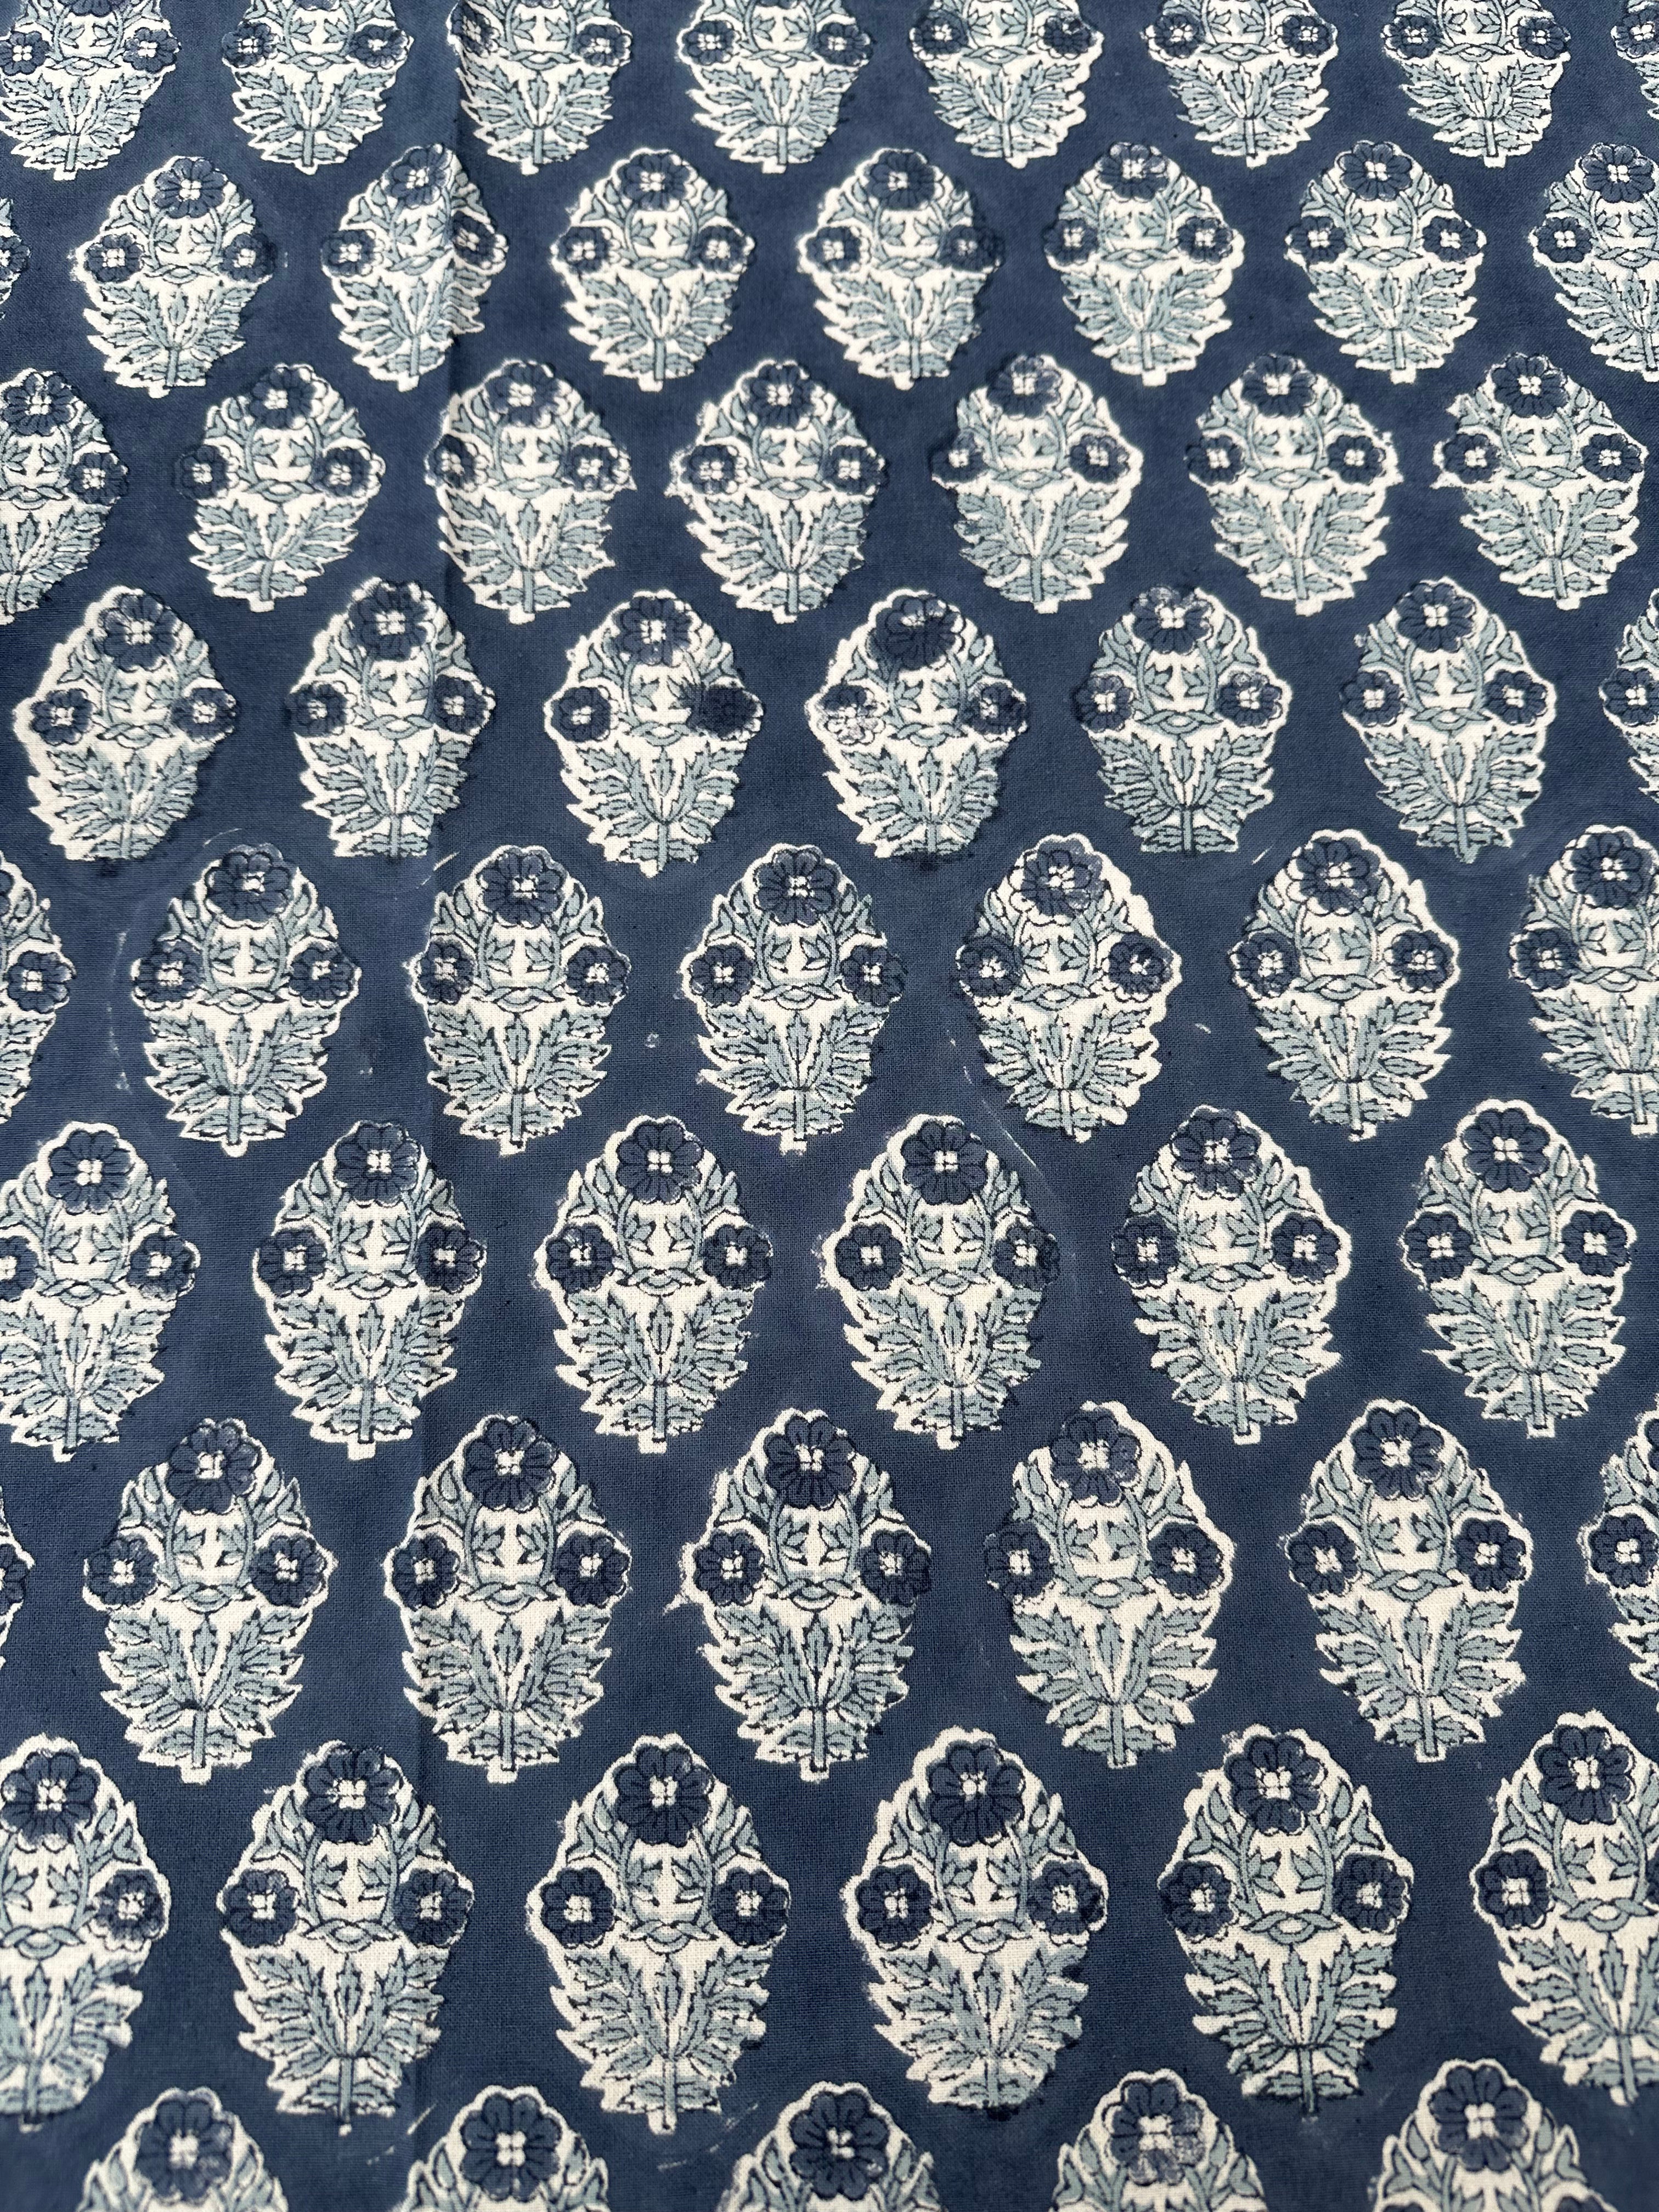 Petrel Blue Brindisi Tablecloth